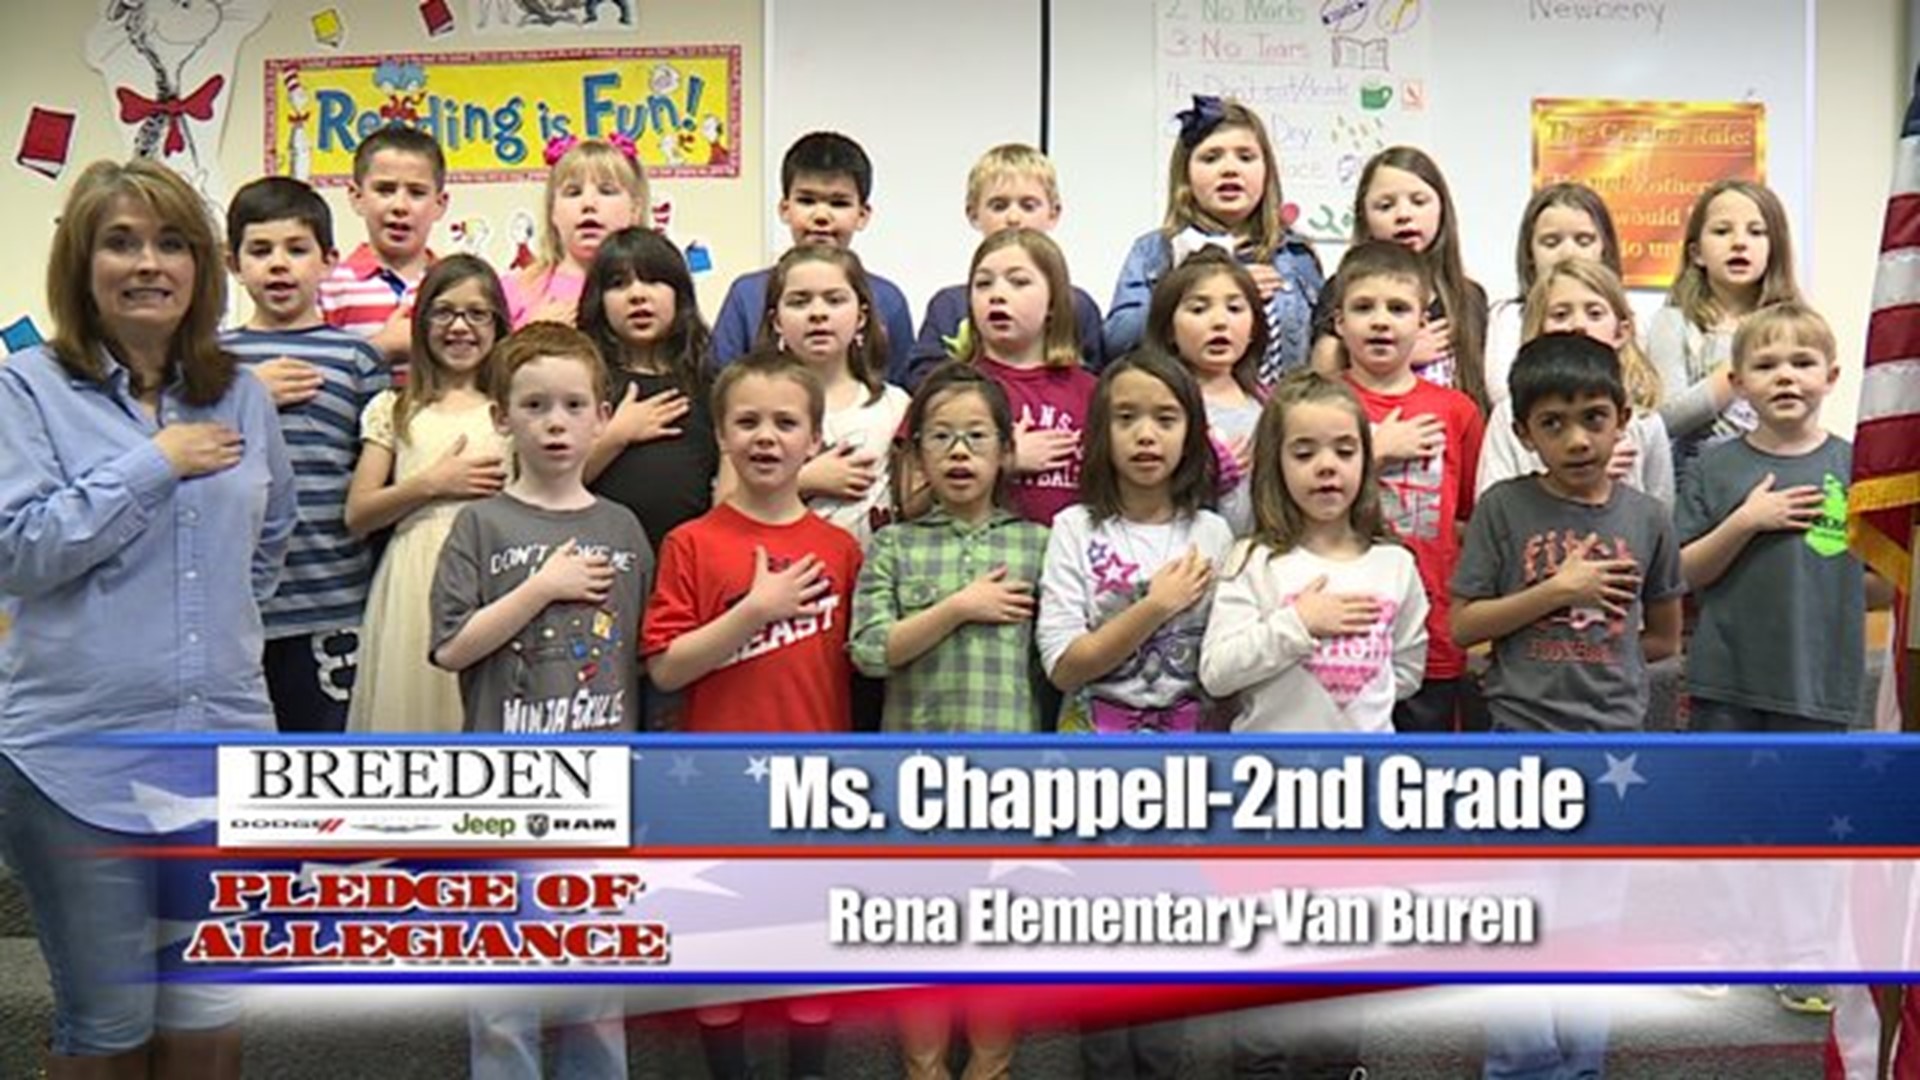 Rena Elementary - Van Buren, Ms. Chappell - Second Grade